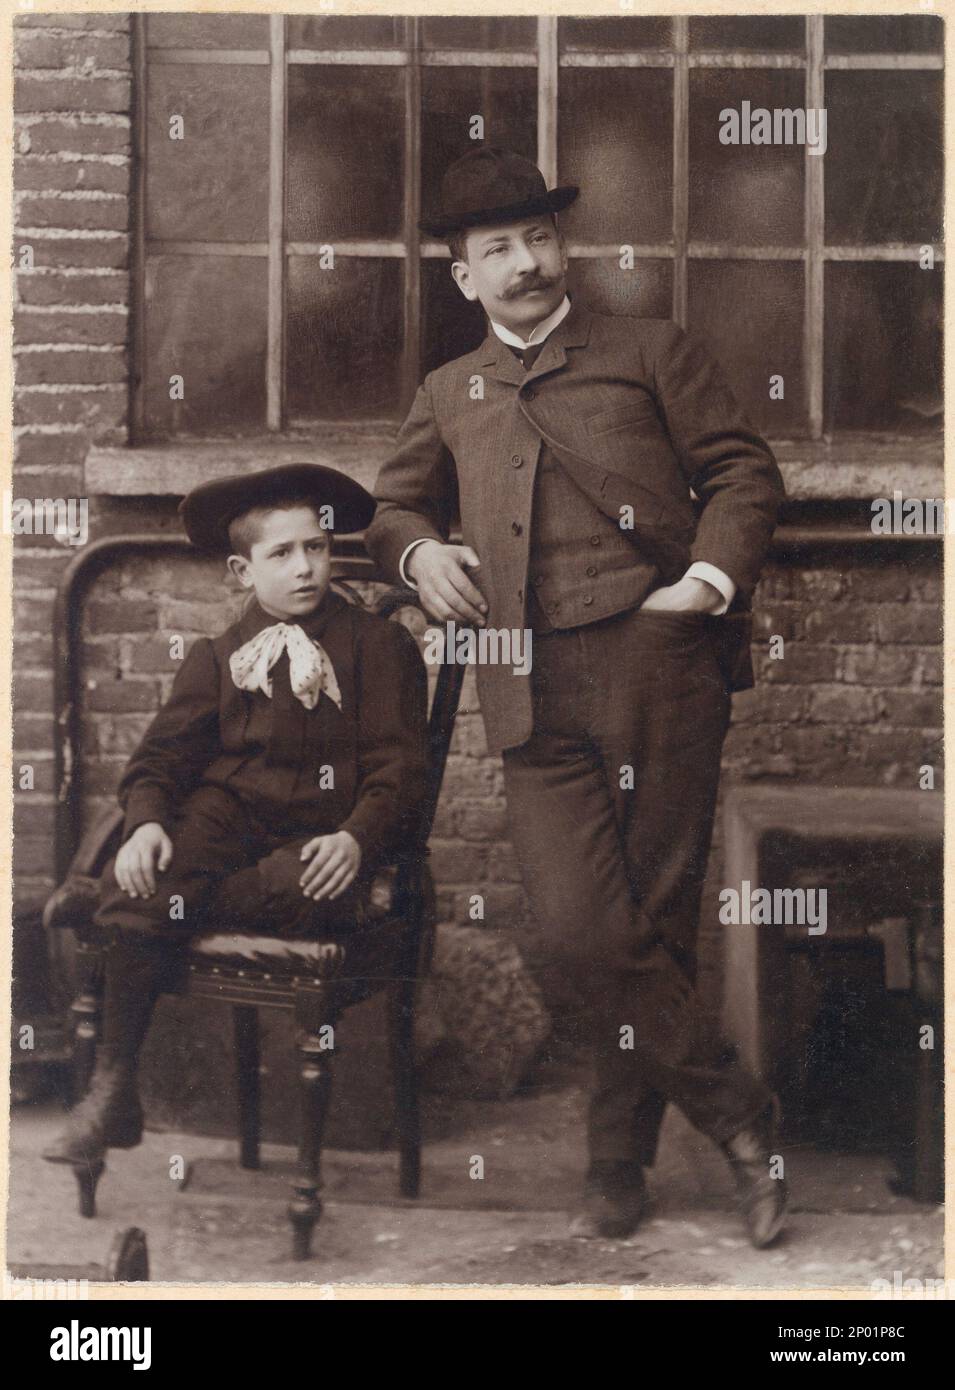 1900 ca. , Legnano , Italia : Un padre con figlio - PADRE e FIGLIO - parenti - FAMIGLIA - FAMIGLIA - COPPIA - COPPIA - duo - cravatta - cravatta - colletto - cappello - bambino - bambini - BELLE EPOQUE ----- Archivio GBB Foto Stock